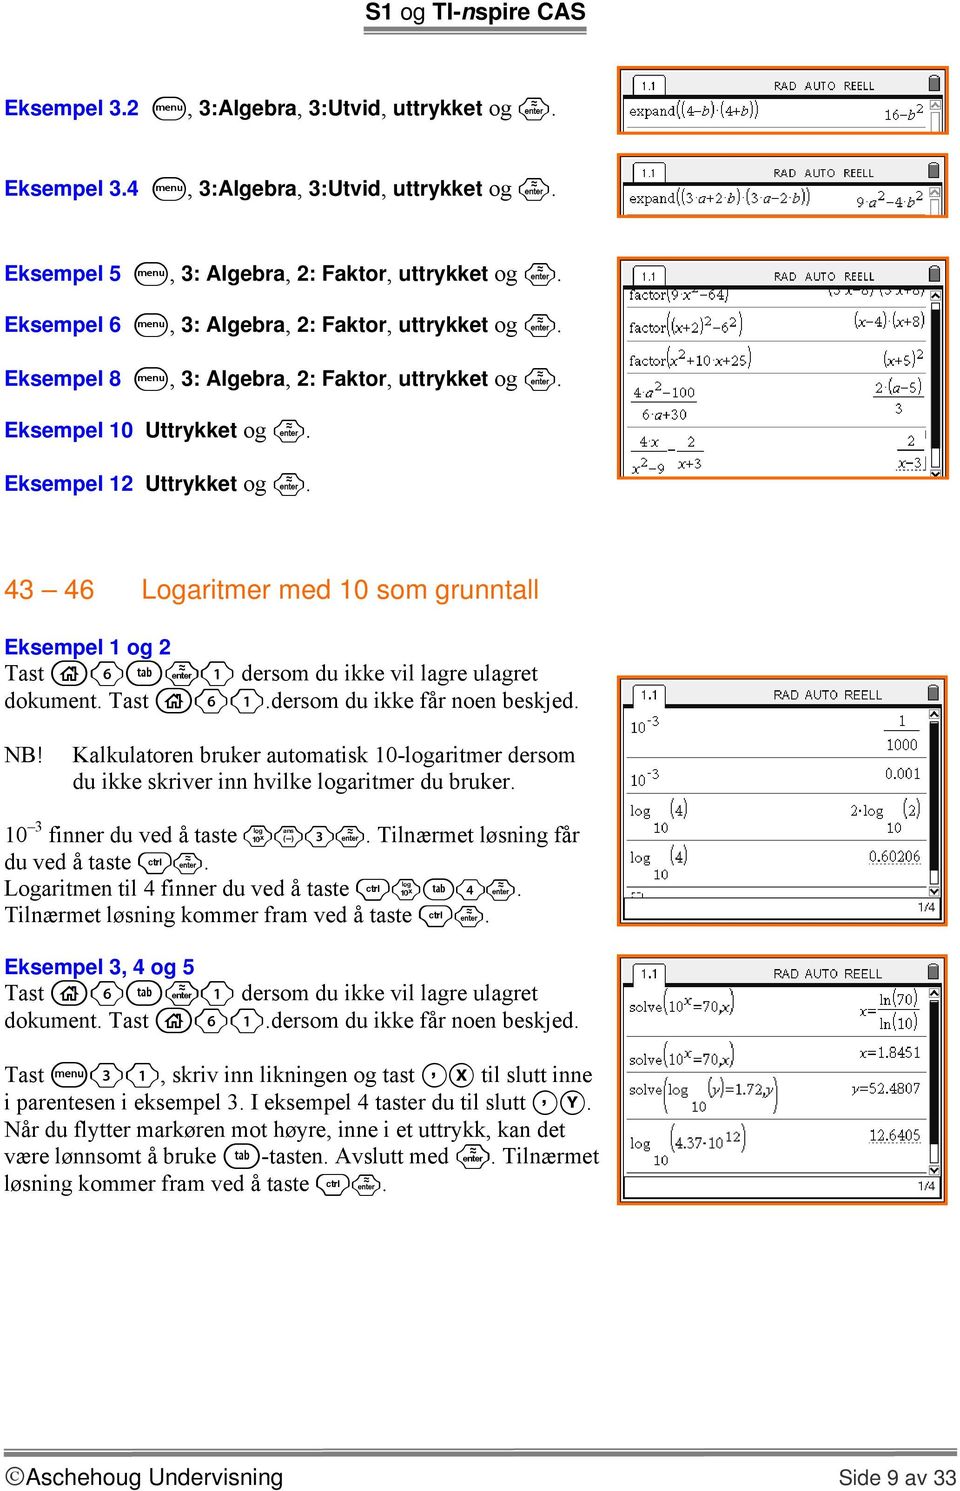 43 46 Logaritmer med 10 som grunntall Eksempel 1 og 2 NB! Kalkulatoren bruker automatisk 10-logaritmer dersom du ikke skriver inn hvilke logaritmer du bruker. 10 3 finner du ved å taste sv3.